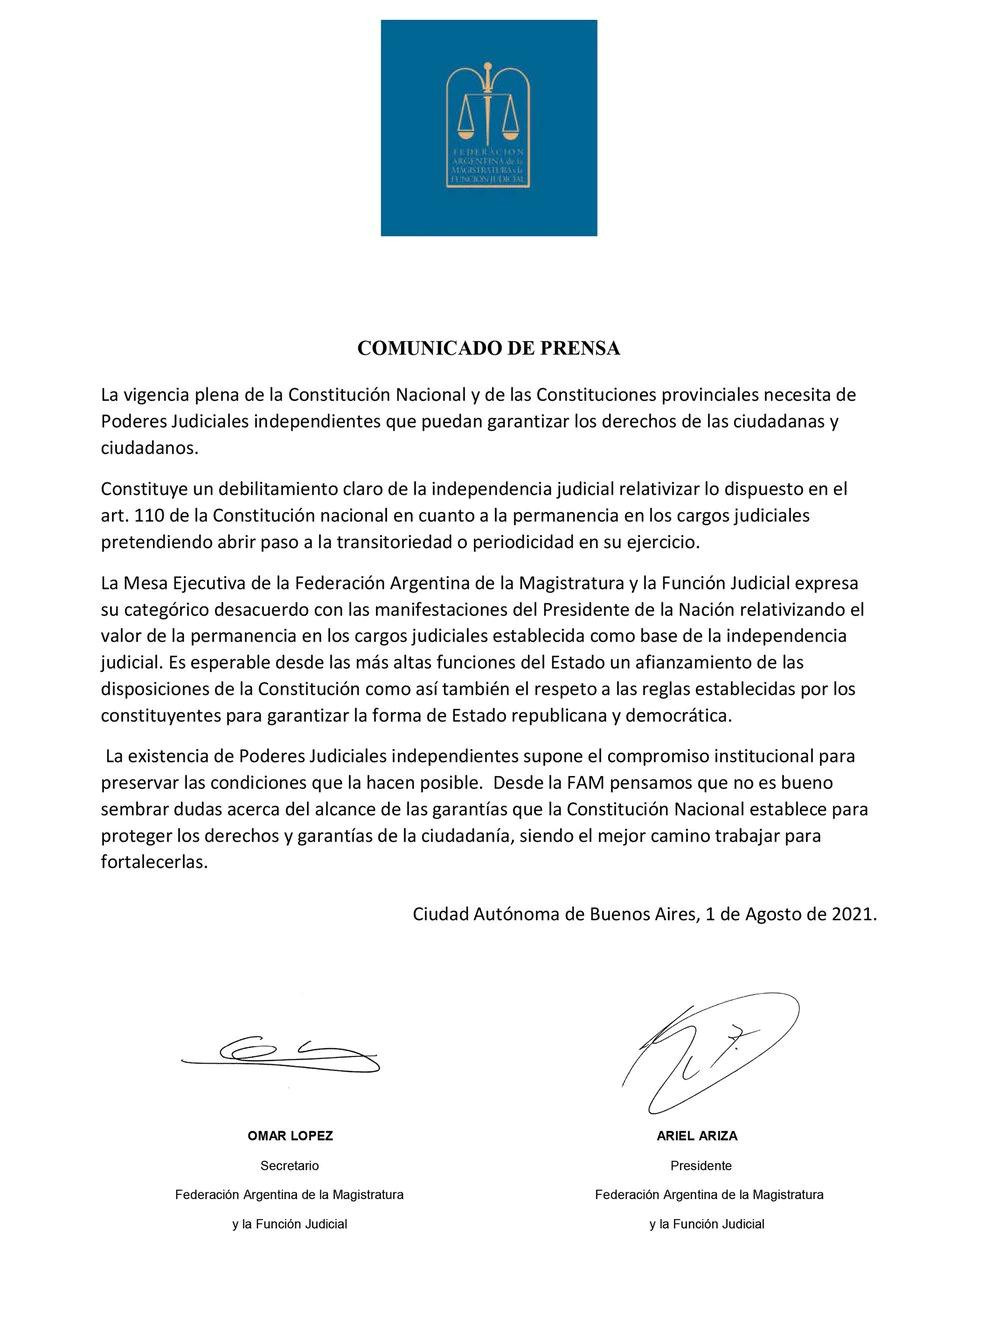 Carta de Federación Argentina de la Magistratura y la Función Judicial al presidente Alberto Fernández